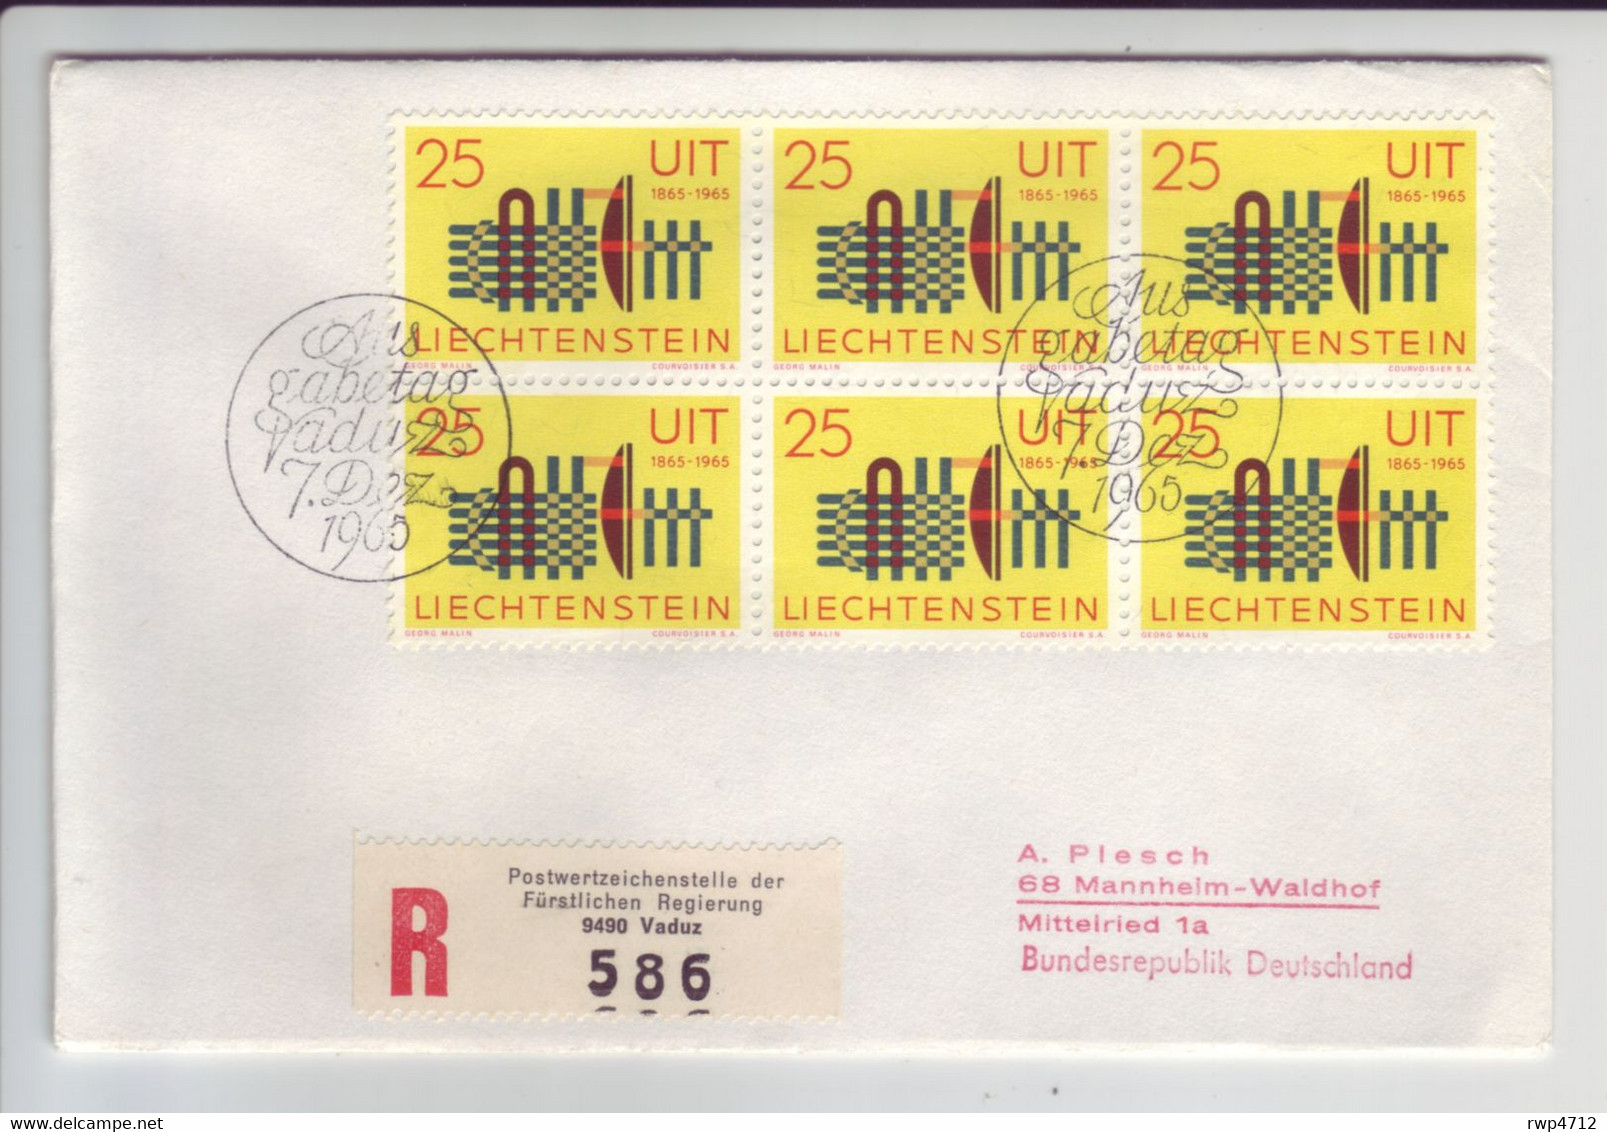 LIECHTENSTEIN  R-FDC  Mi.-Nr. 458  1965  UIT  ITU - Storia Postale